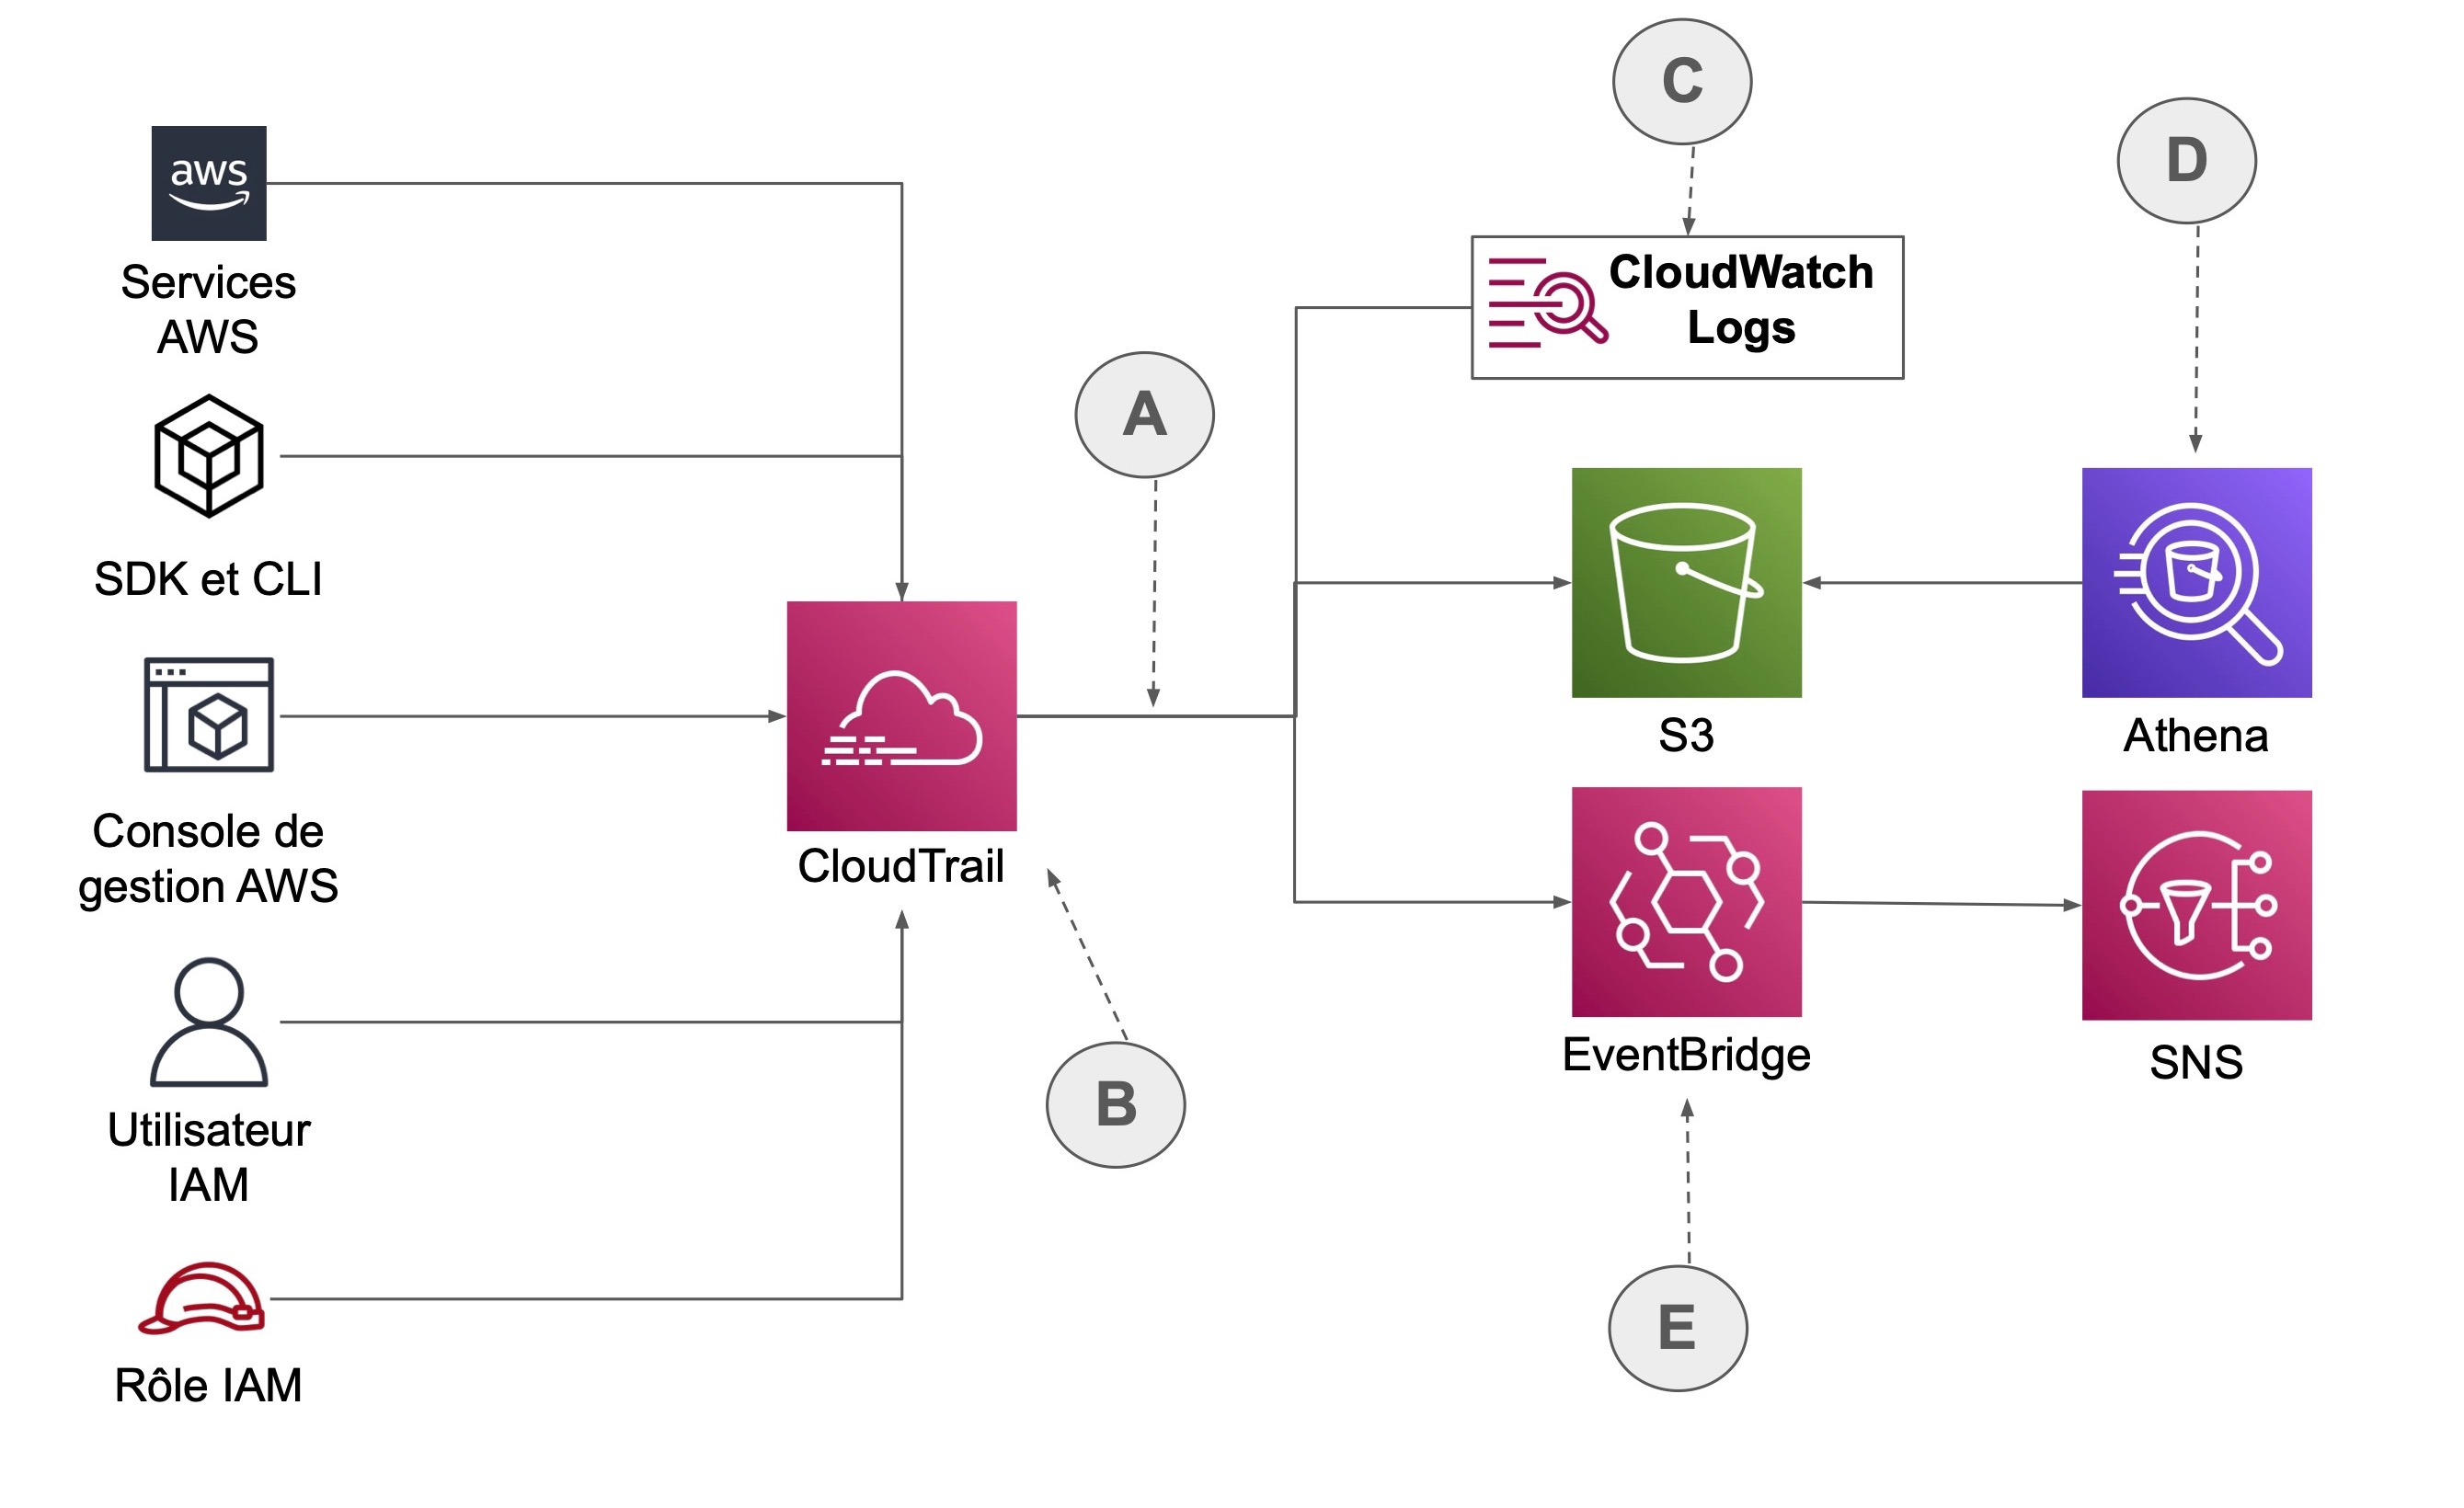 Les chemins mènenes de Services AWS, SDK et CLI, Console de gestion AWS, utilisateurs IAM et Rôle IAM vers CloudTrail (B), puis le chemin continue (A) vers CloudWatch Logs (C), S3 qui interagit avec Athena (C) et EventBridge (E) qui interagit avec SNS